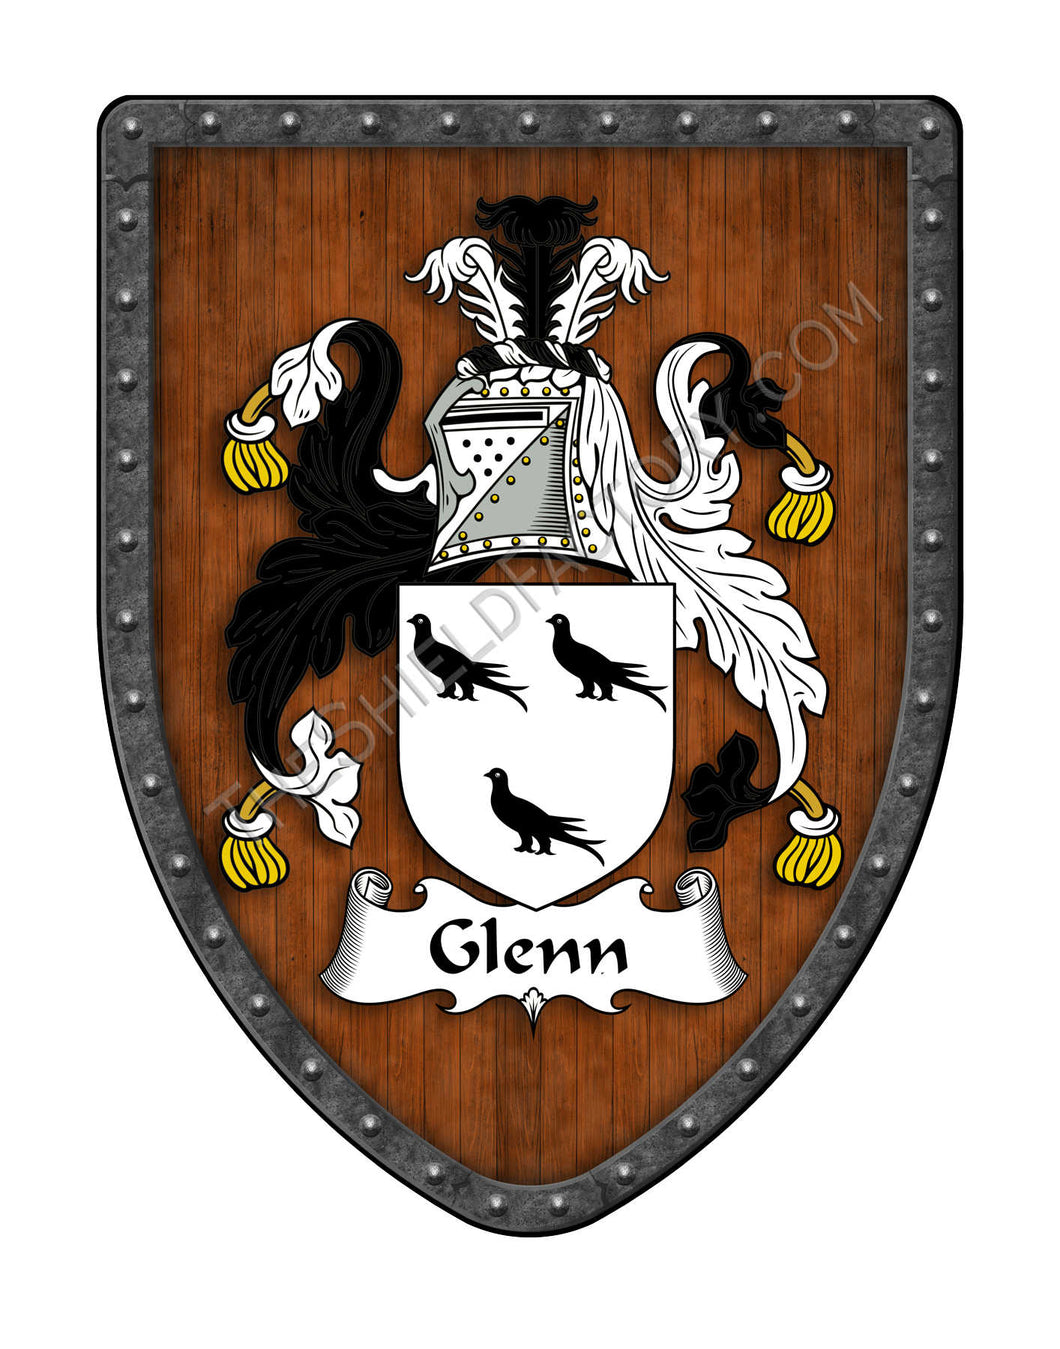 Glenn Coat of Arms Shield